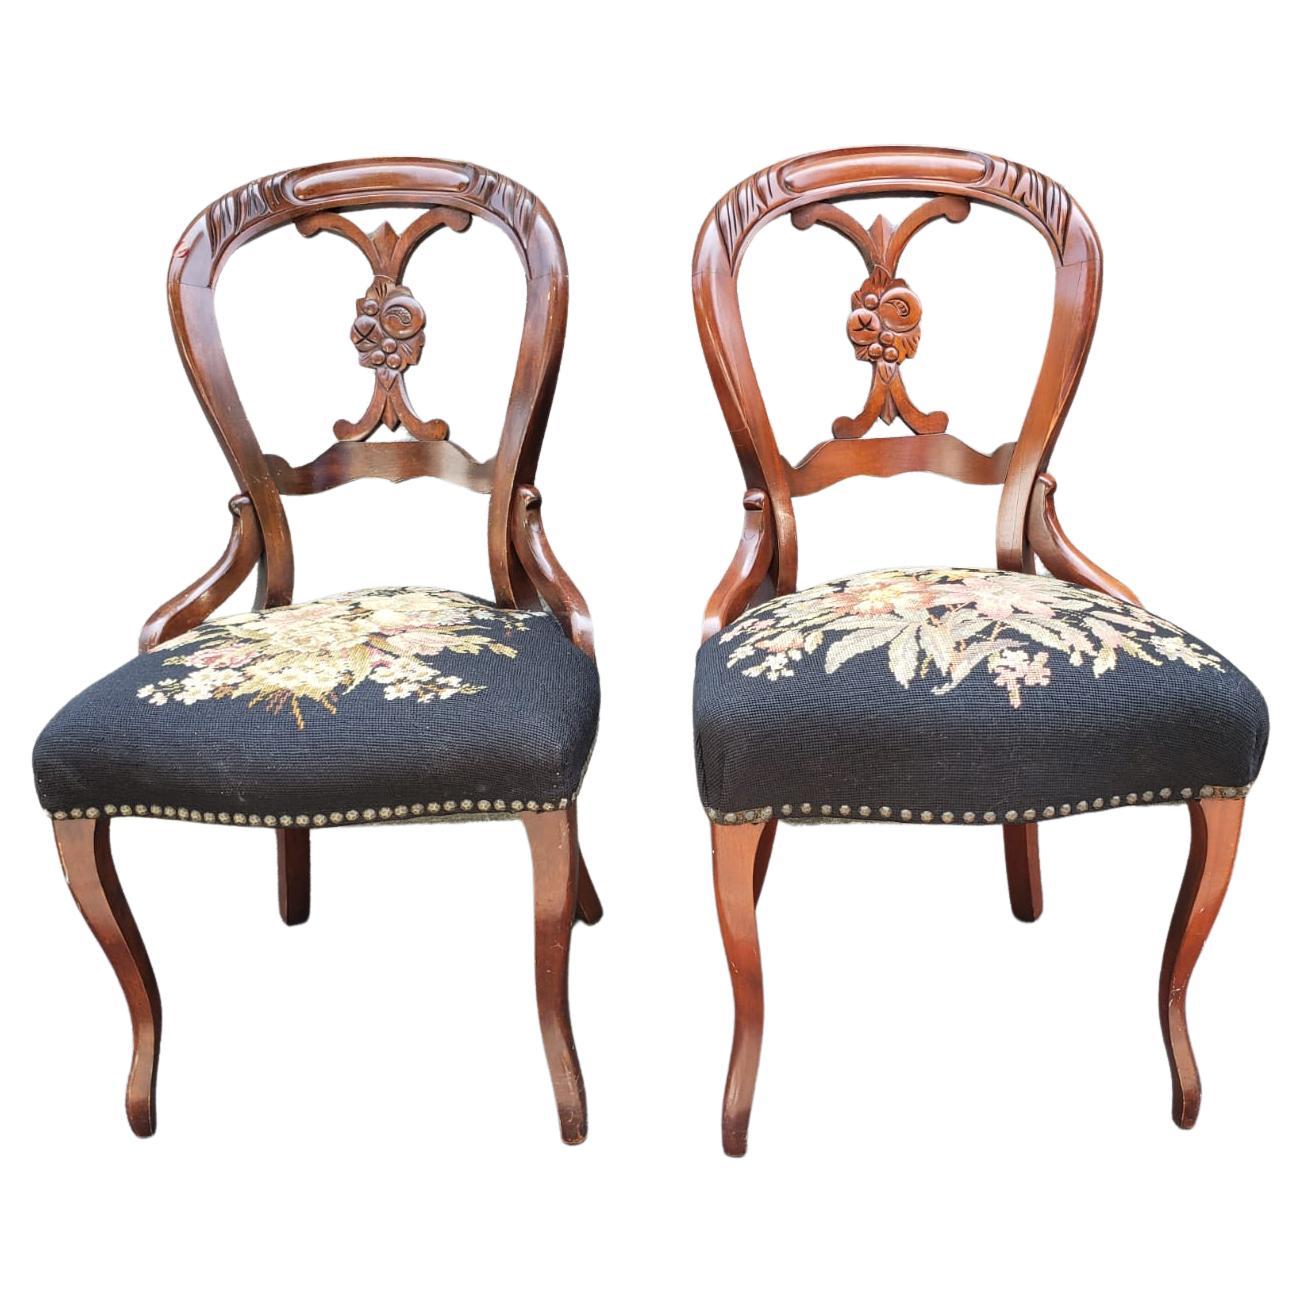 Viktorianische Mahagoni & Floral NeedlePoint gepolsterte Stühle mit NailHead Trims